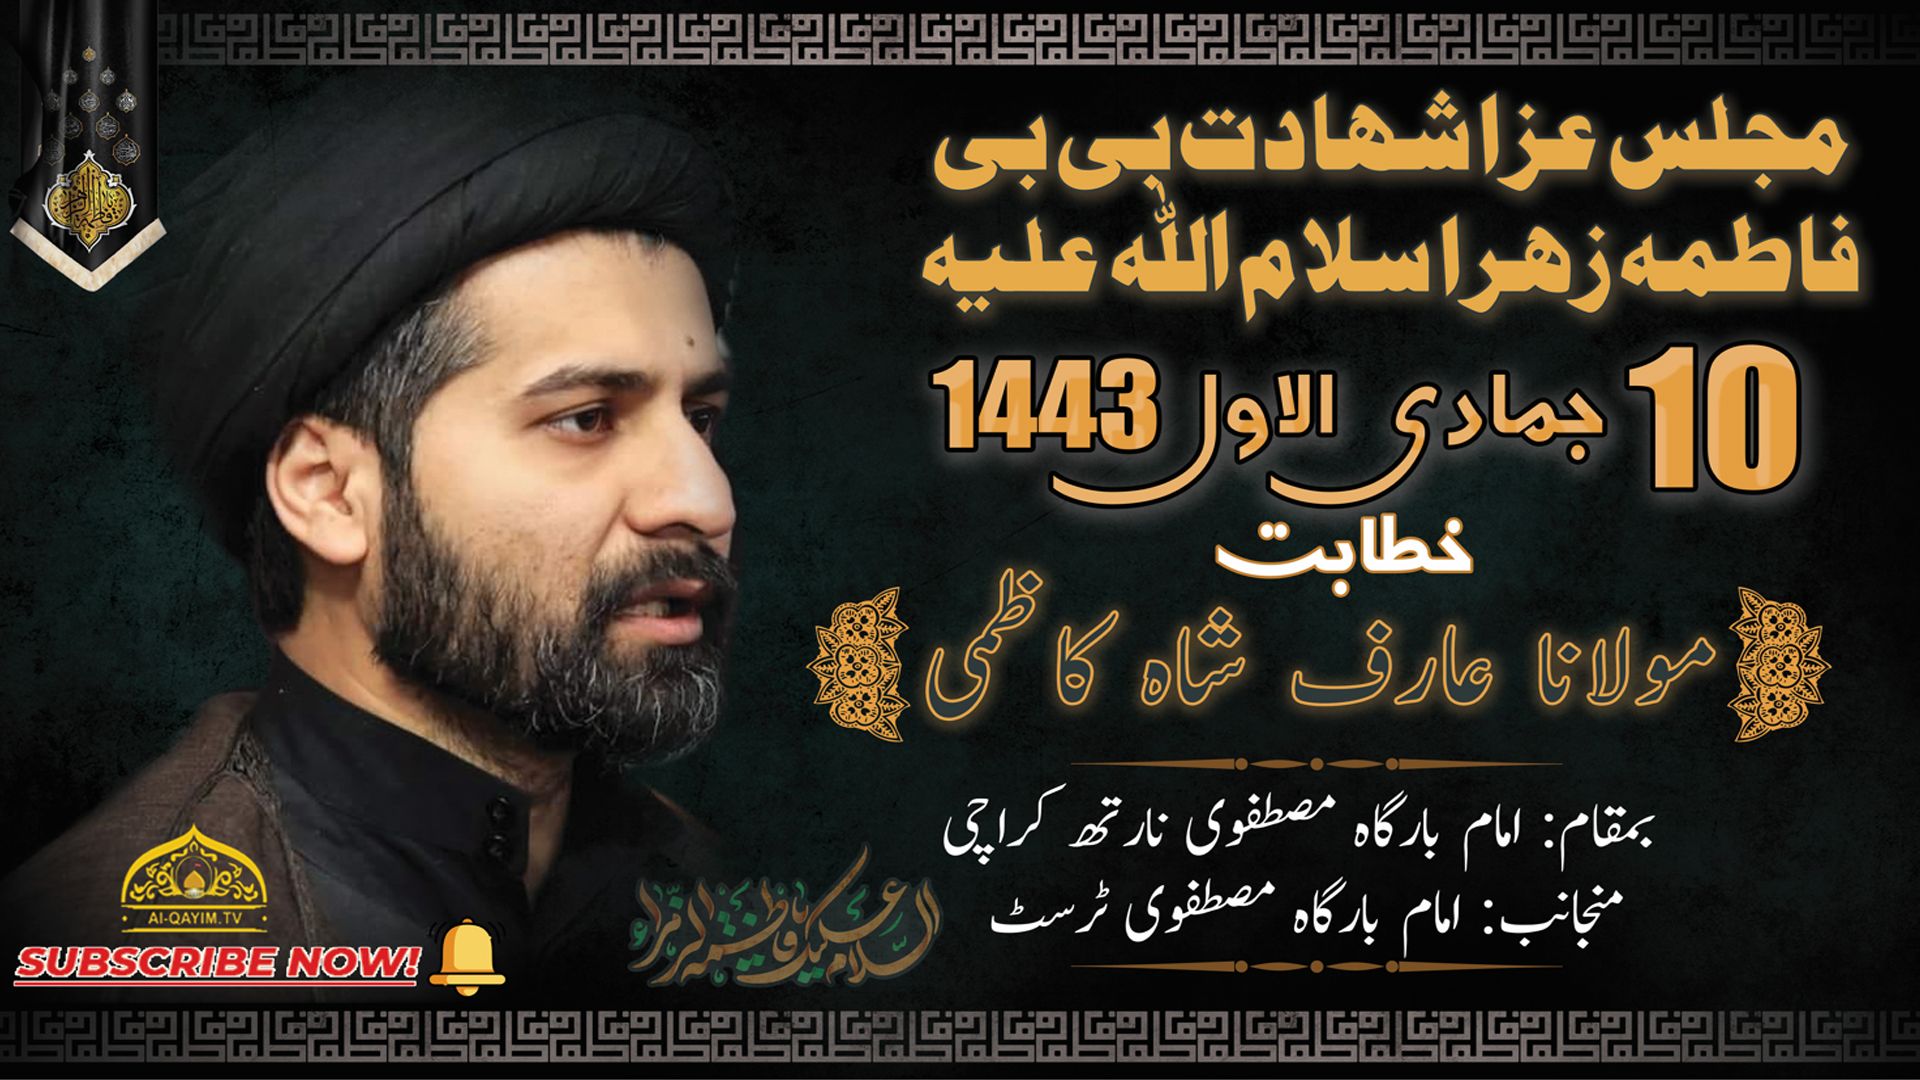 Majlis | Arif Shah Kazmi | Shahadat Bibi Fatima | 15th December 2021 Imam Bargah Mustafvi - Karachi